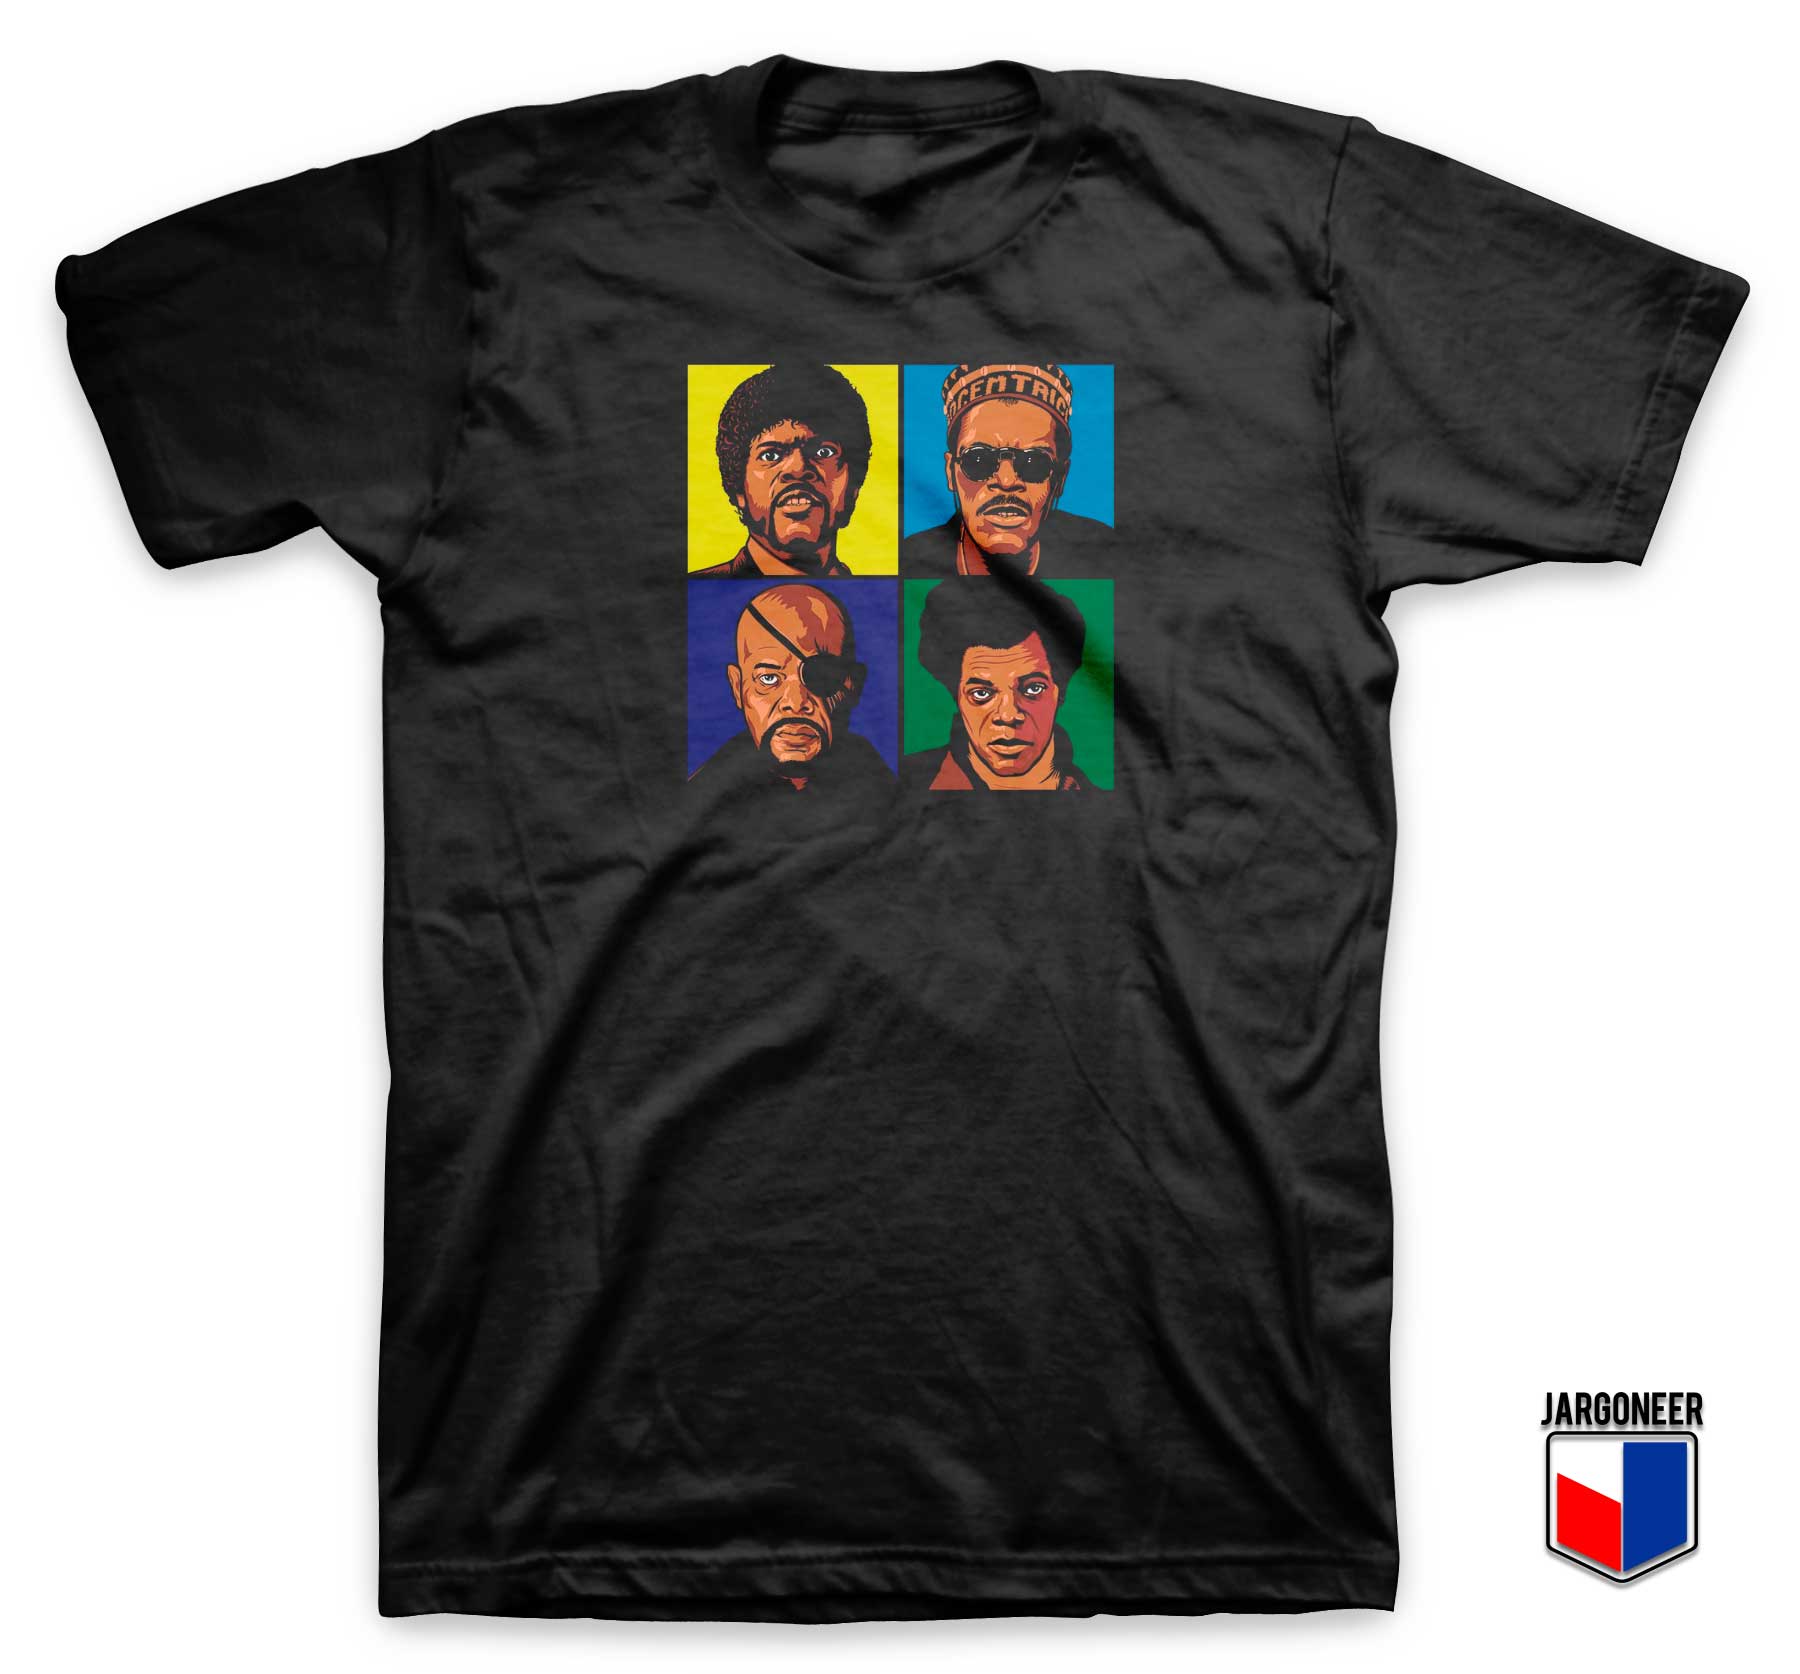 Pop Art Sam Jackson T shirt - Shop Unique Graphic Cool Shirt Designs